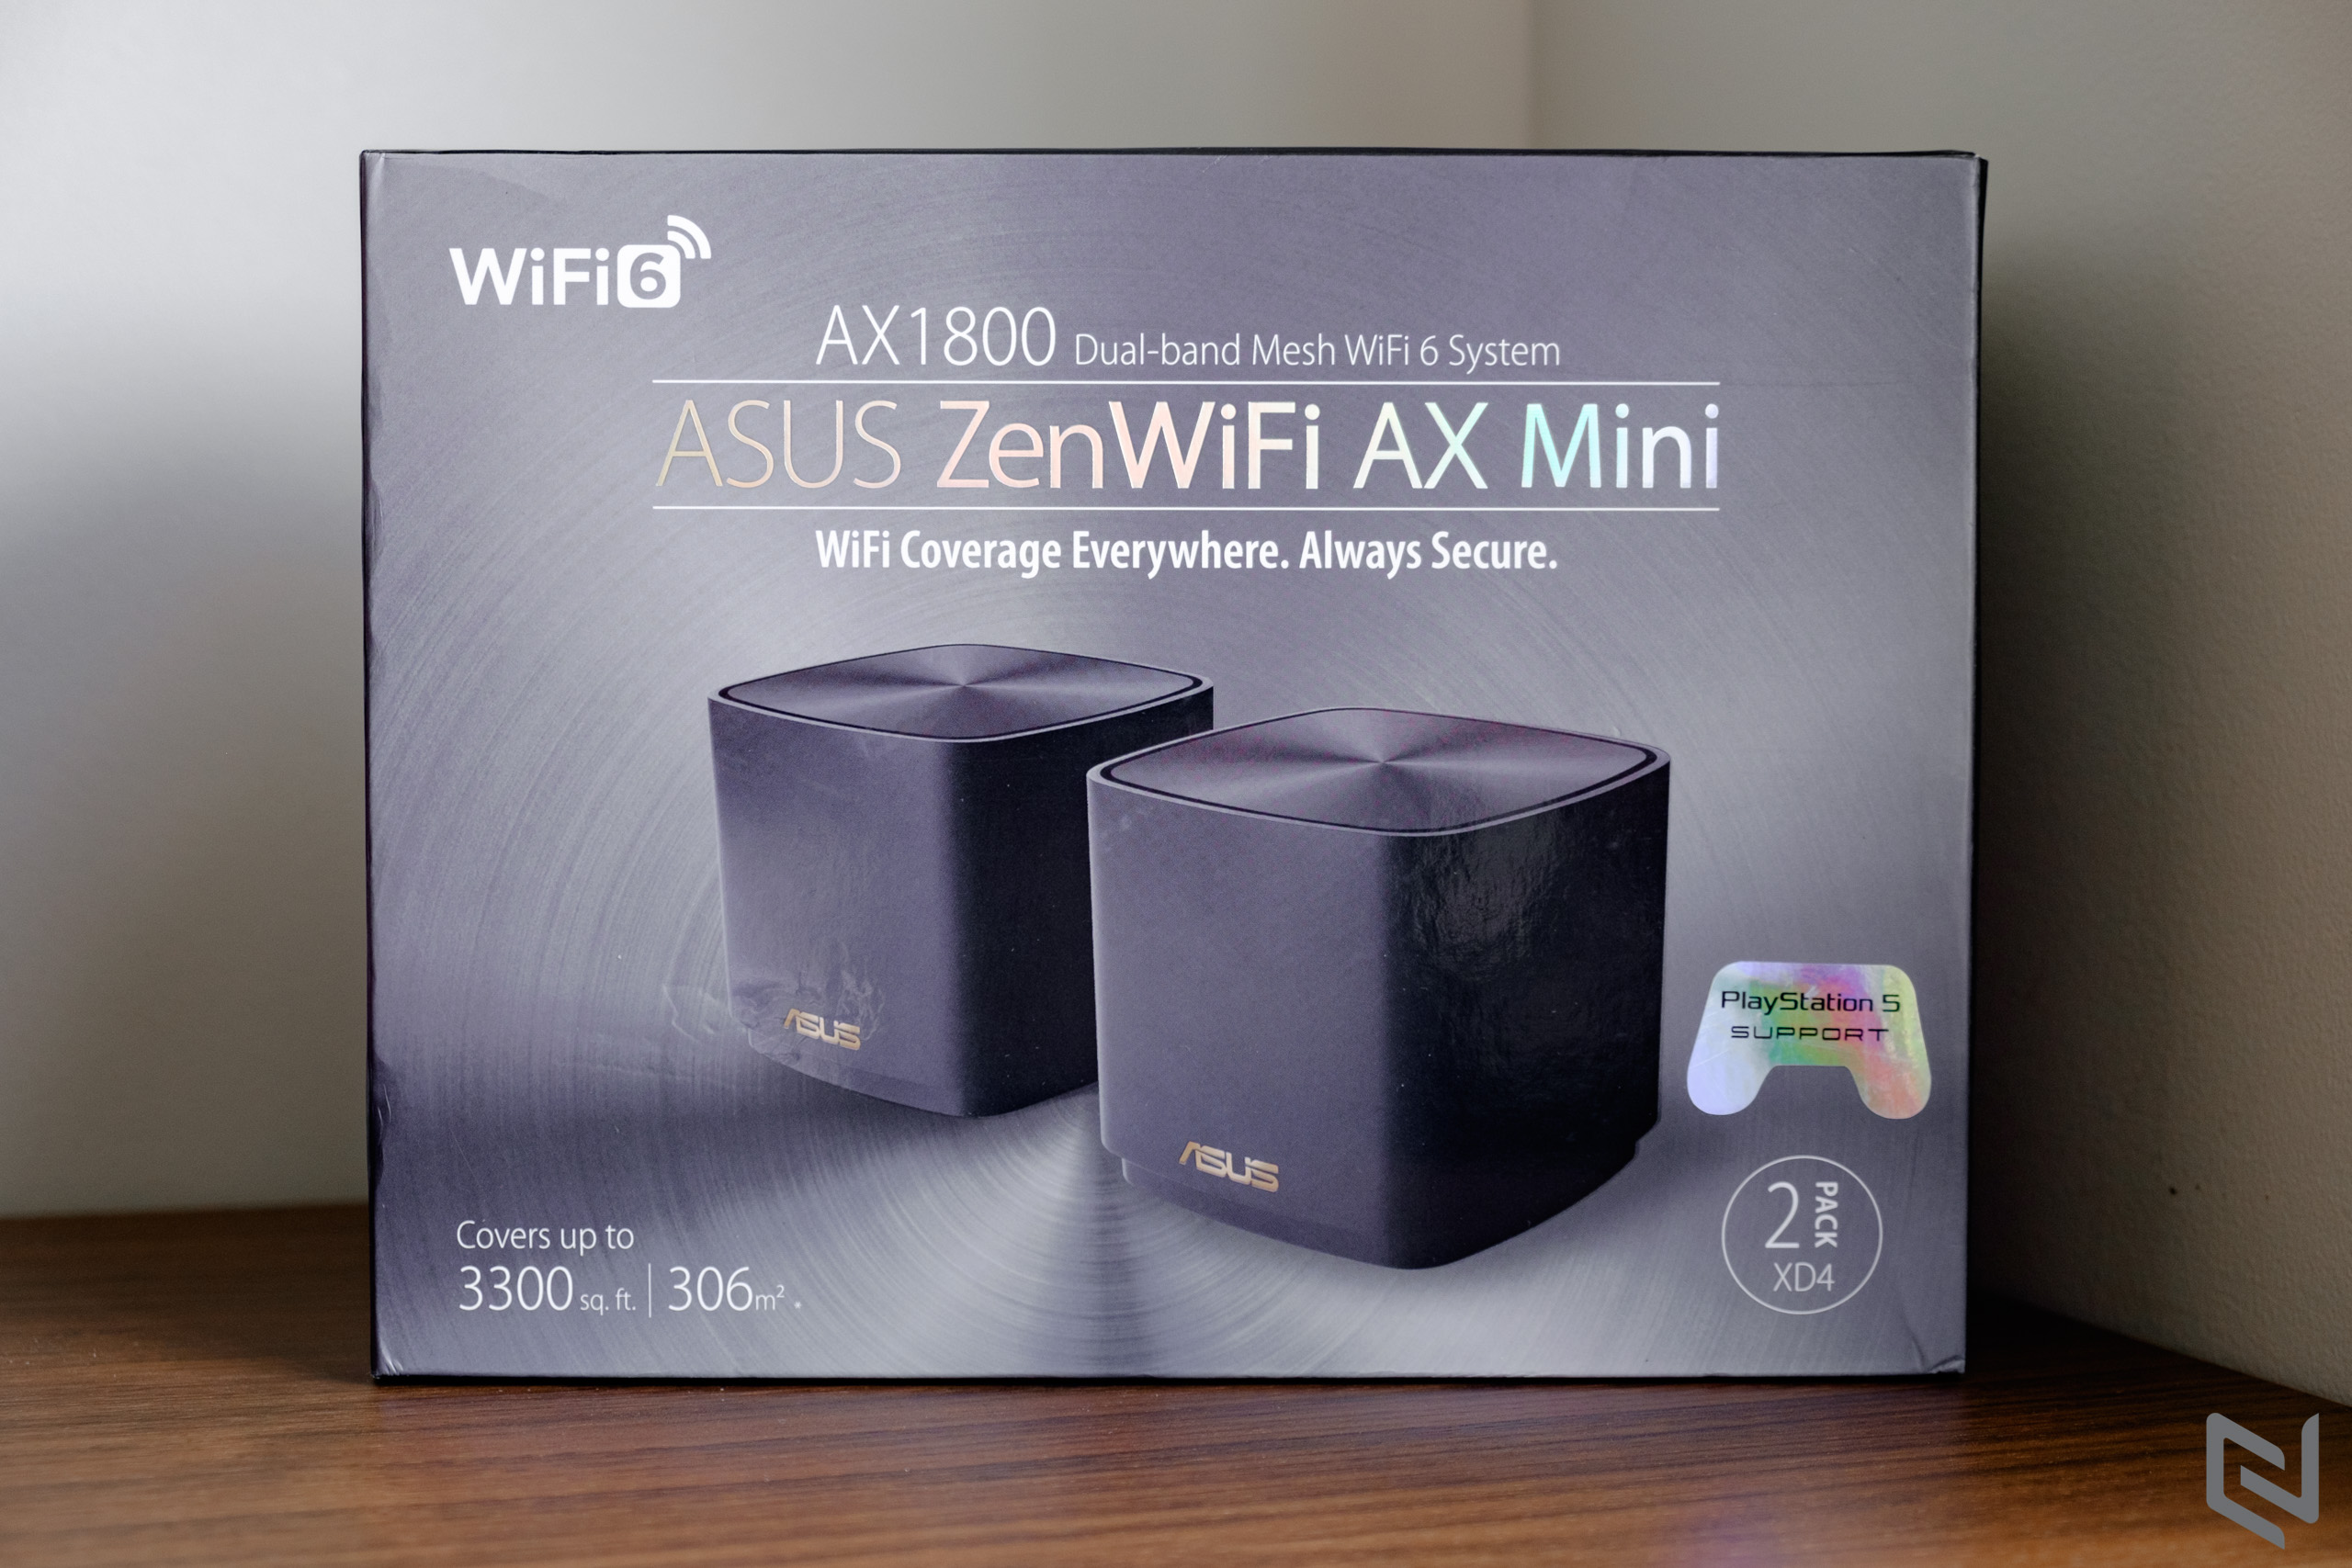 Trên tay ASUS ZenWiFi AX Mini - Giải pháp WiFi Mesh cùng WiFi 6 với giá thành hợp lý, lựa chọn tốt để nâng cấp hiện tại